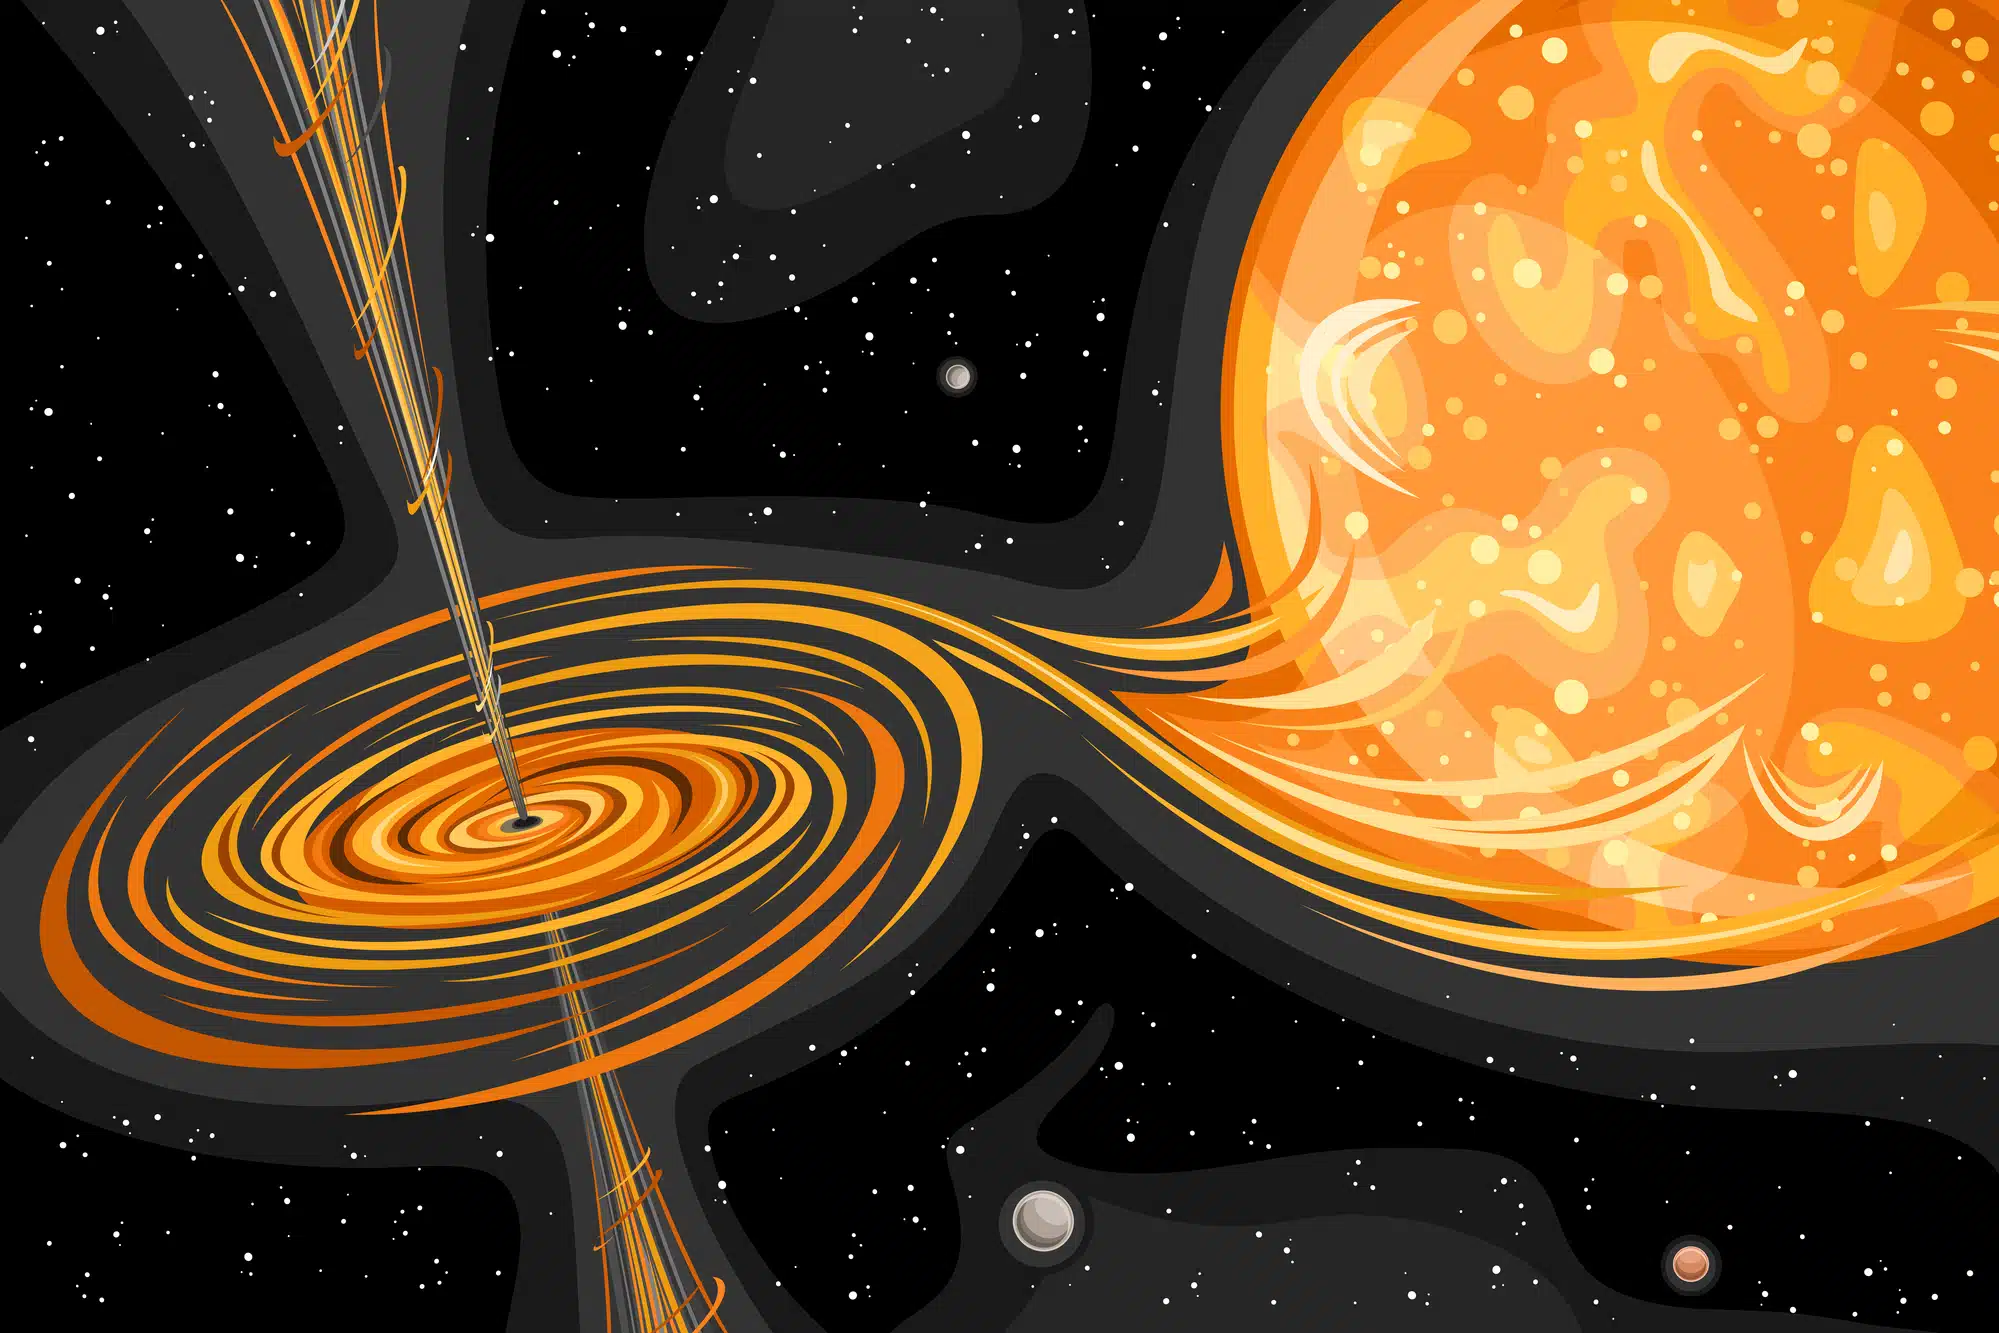 חור שחור מושך אל תוכו חומר, האפשרויות הן שהחומר יותז בחזרה לחלל או שיפול לתוך אופק האירועים.  <a href="https://depositphotos.com. ">המחשה: depositphotos.com</a>